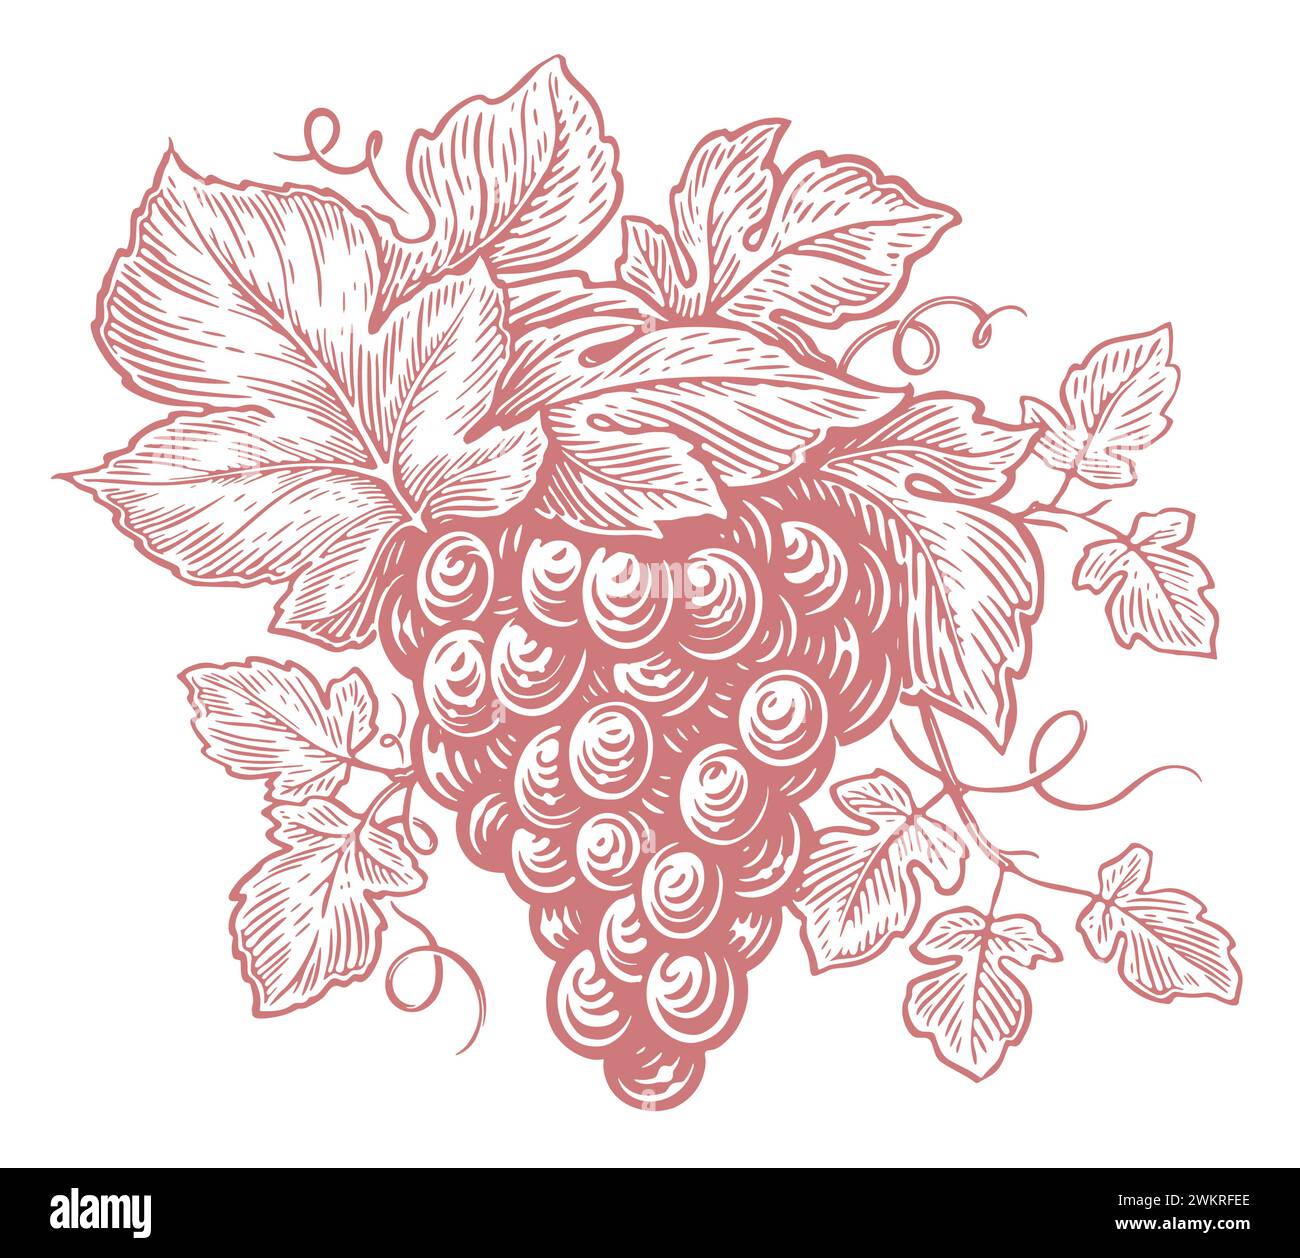 Bouquet de raisins frais. Vigne dessinée à la main avec des feuilles et des baies. Esquisse vintage illustration vectorielle Illustration de Vecteur